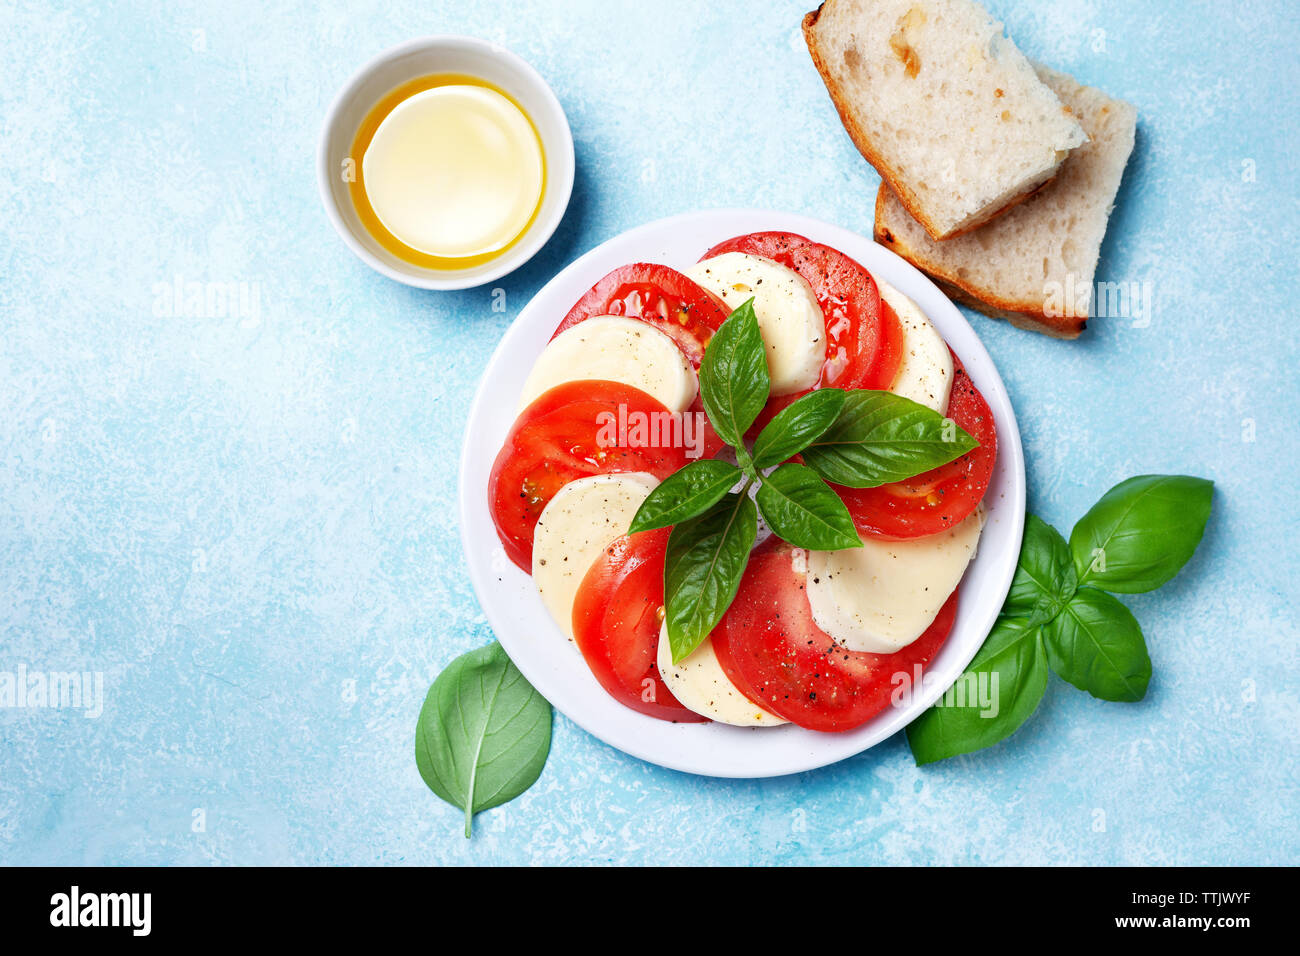 Tomate mozzarella et basilic salade caprese sur une plaque blanche close-up Vue de dessus. Banque D'Images